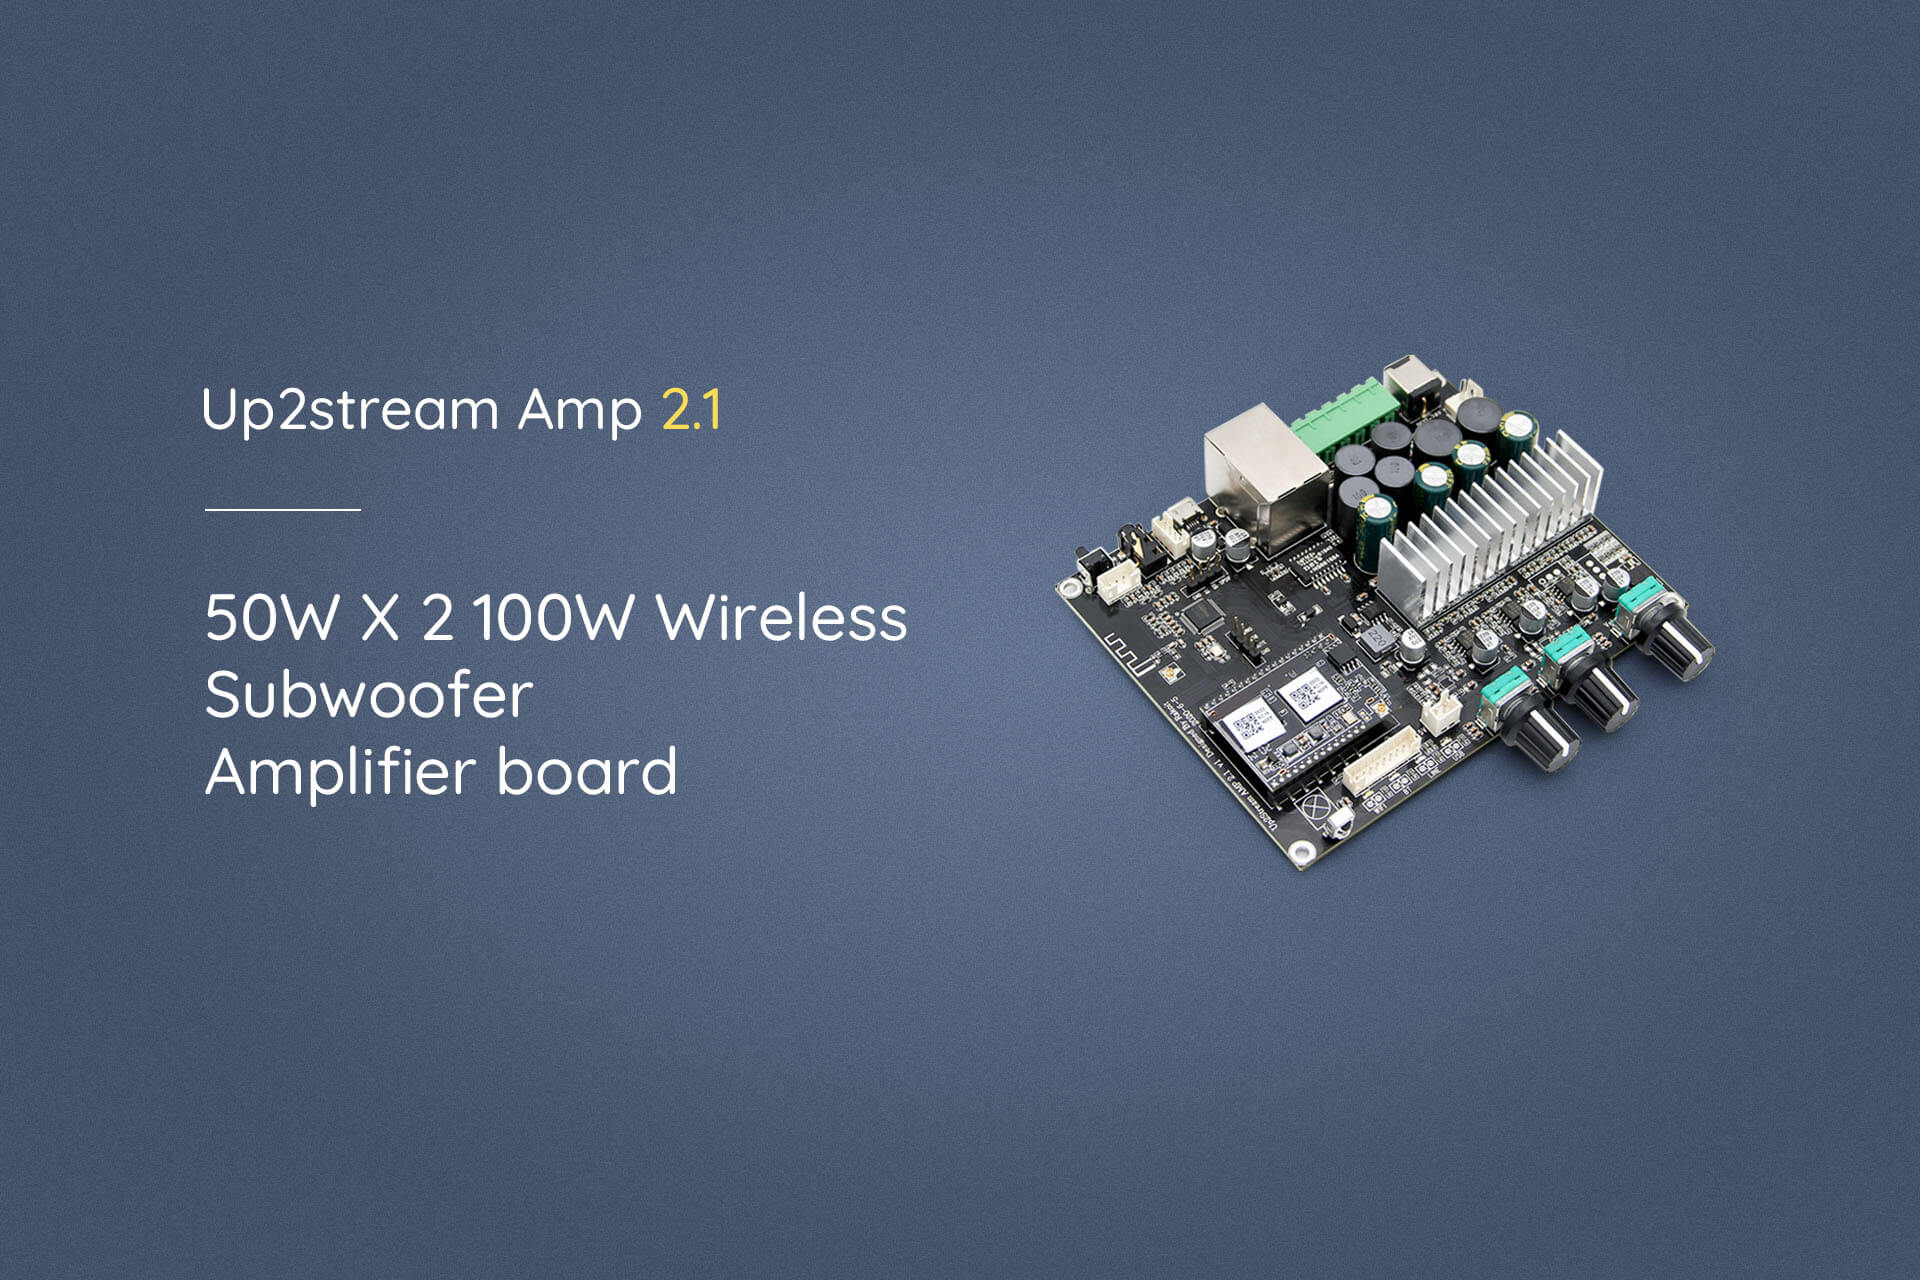 Wireless 2.1 Amplifier Board - Up2stream Amp 2.1